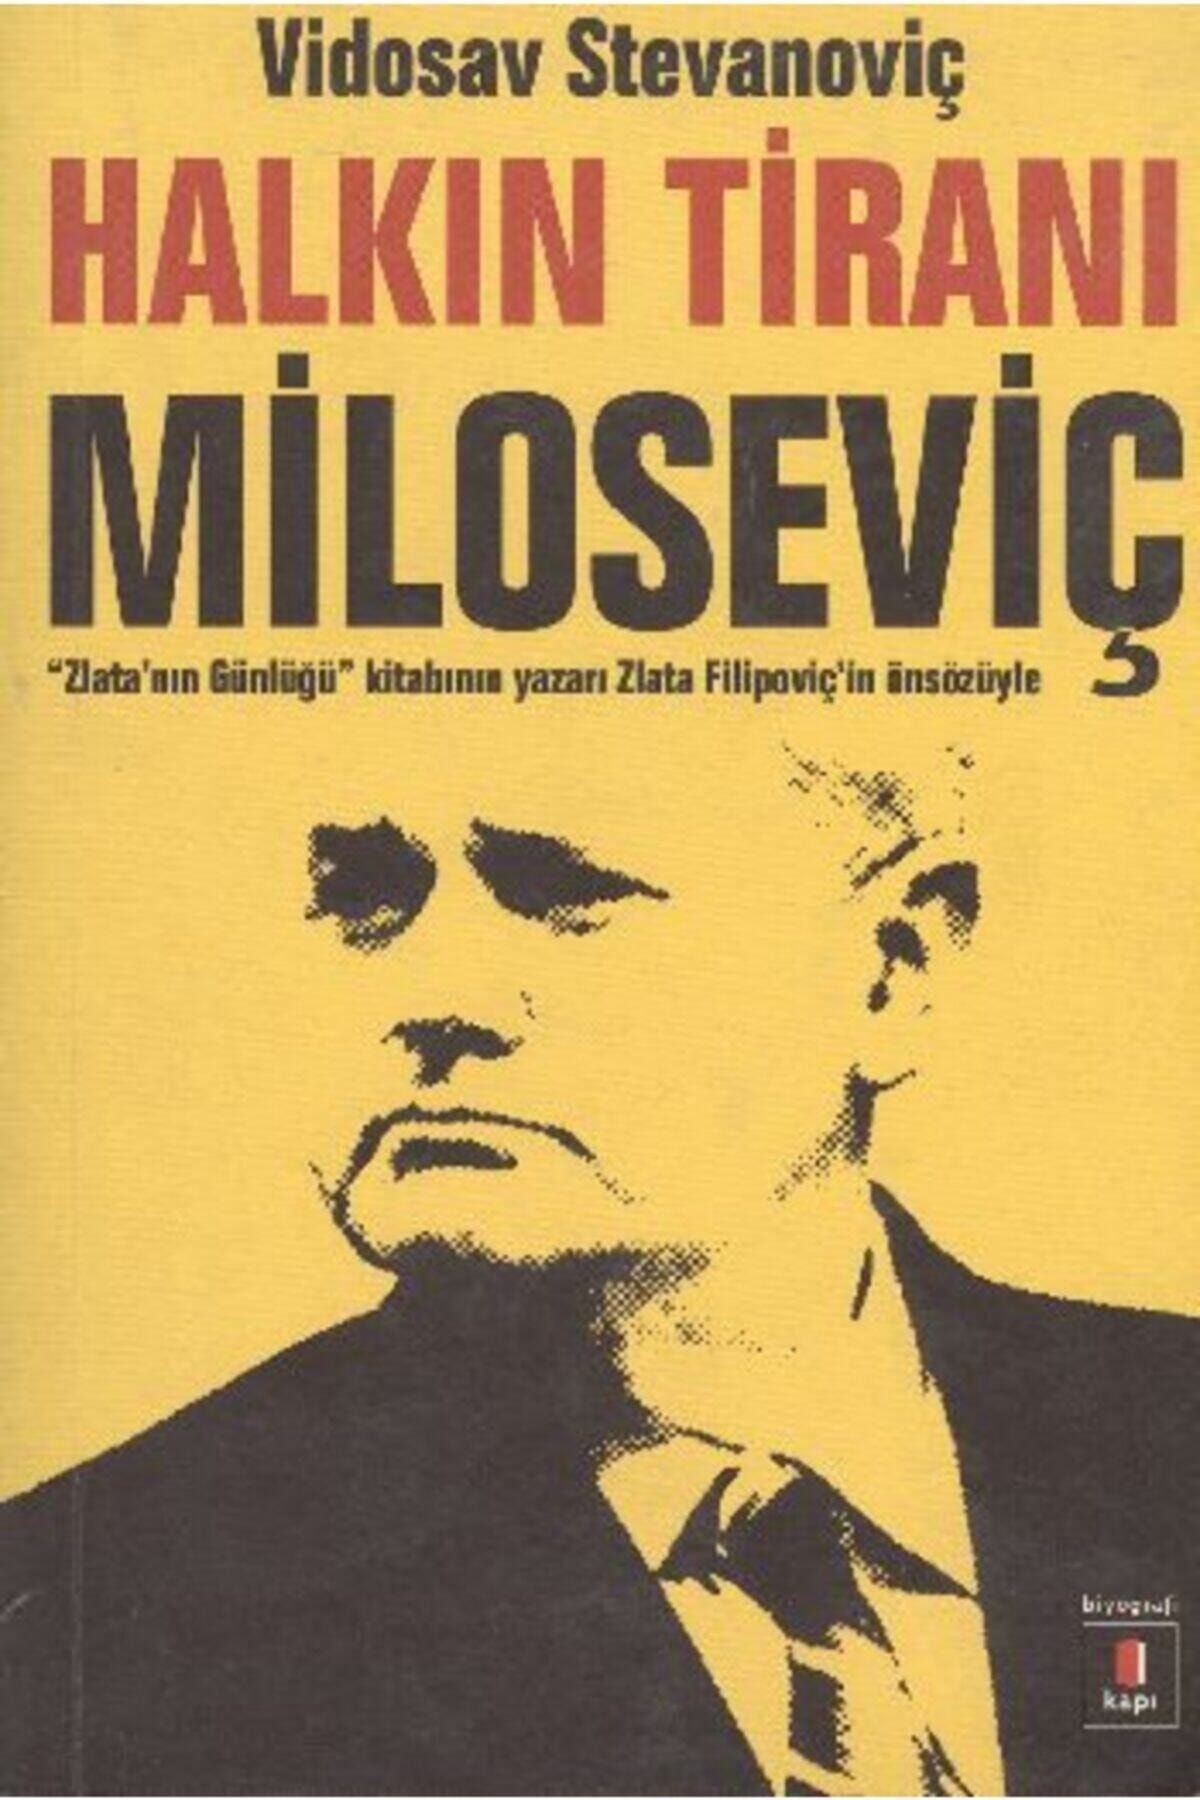 Kapı Yayınları Halkın Tiranı Miloseviç